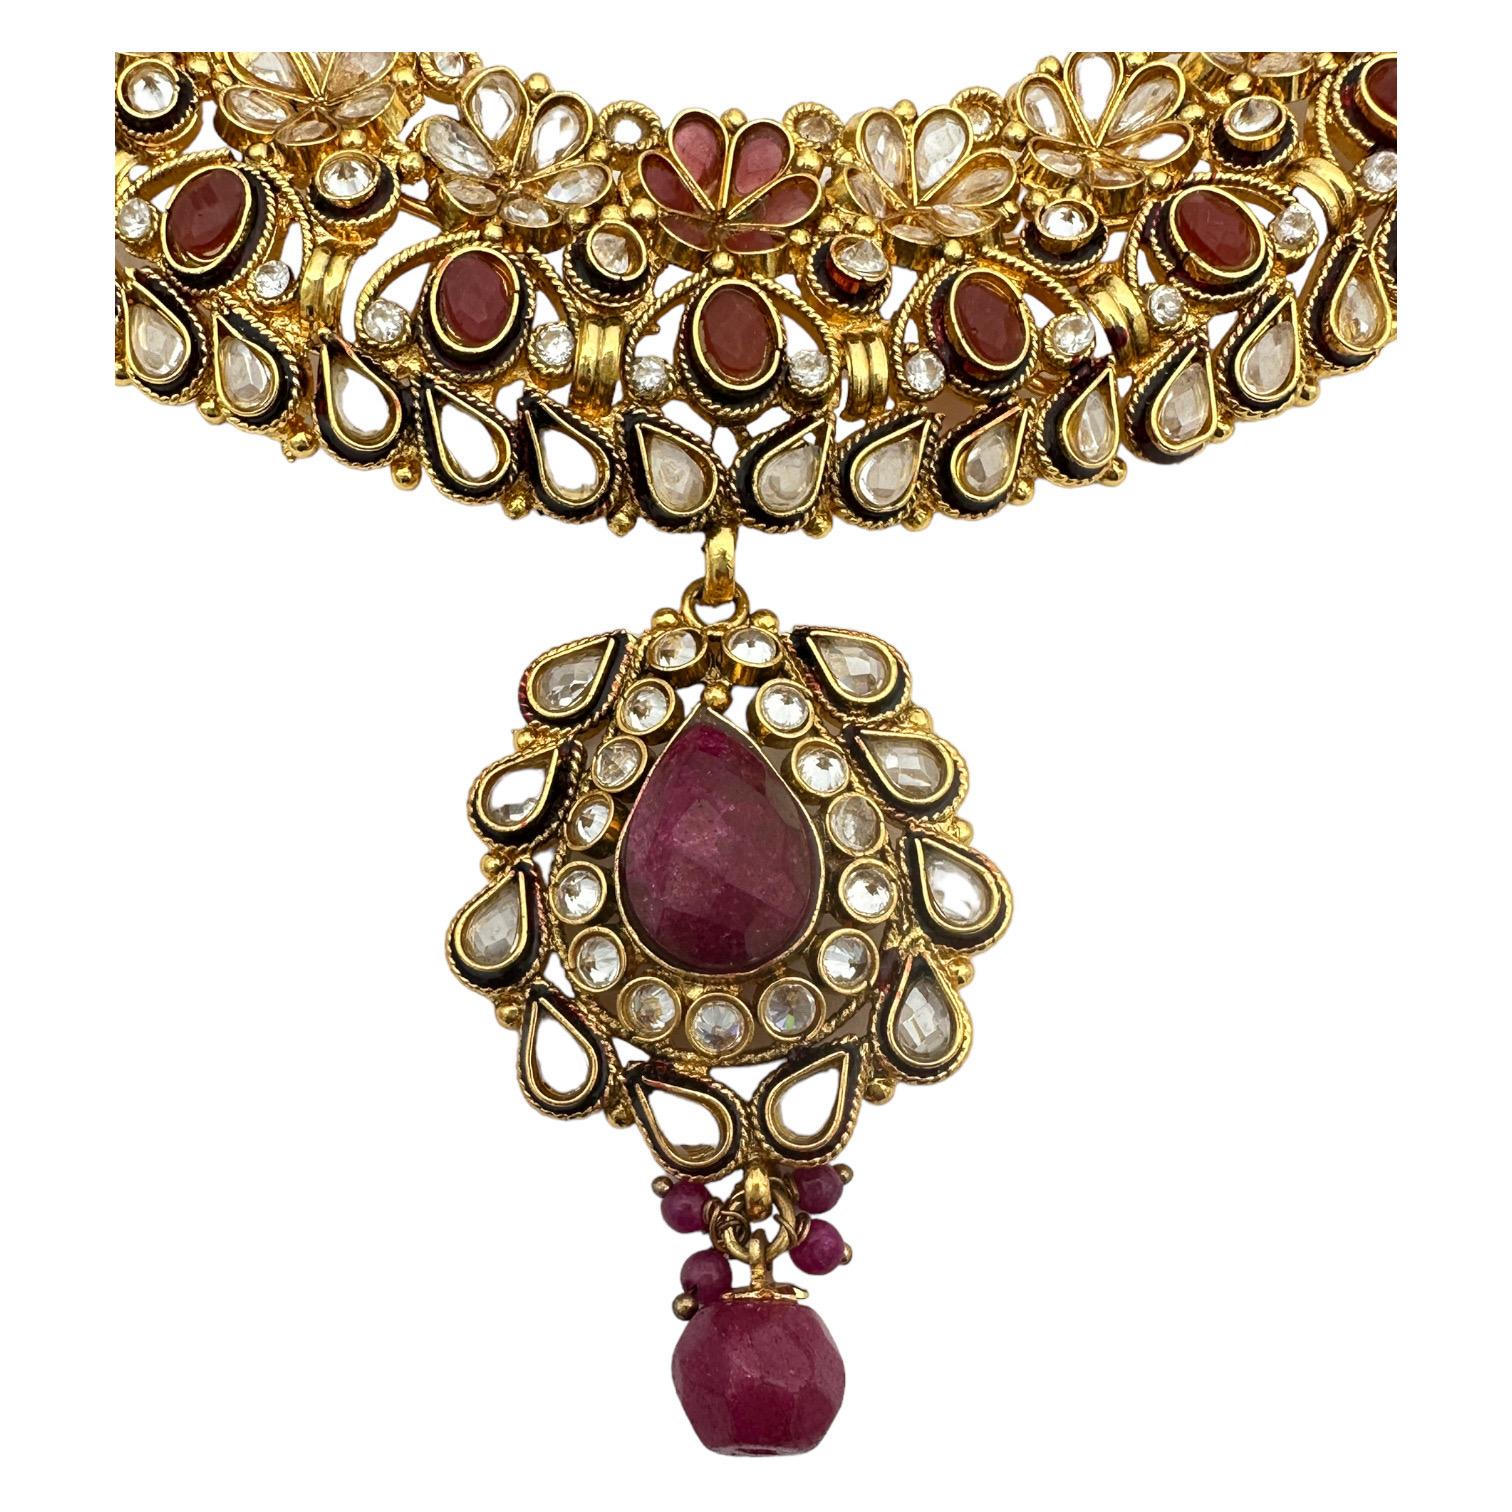 Verleihen Sie Ihrem Look mit der ägyptischen Halskette einen Hauch von Luxus. Dieses verschnörkelte Halsband zeichnet sich durch ein exquisites, handgefertigtes Design aus, das durch die Verwendung von Farbe zu einem wahrhaft einzigartigen Stück